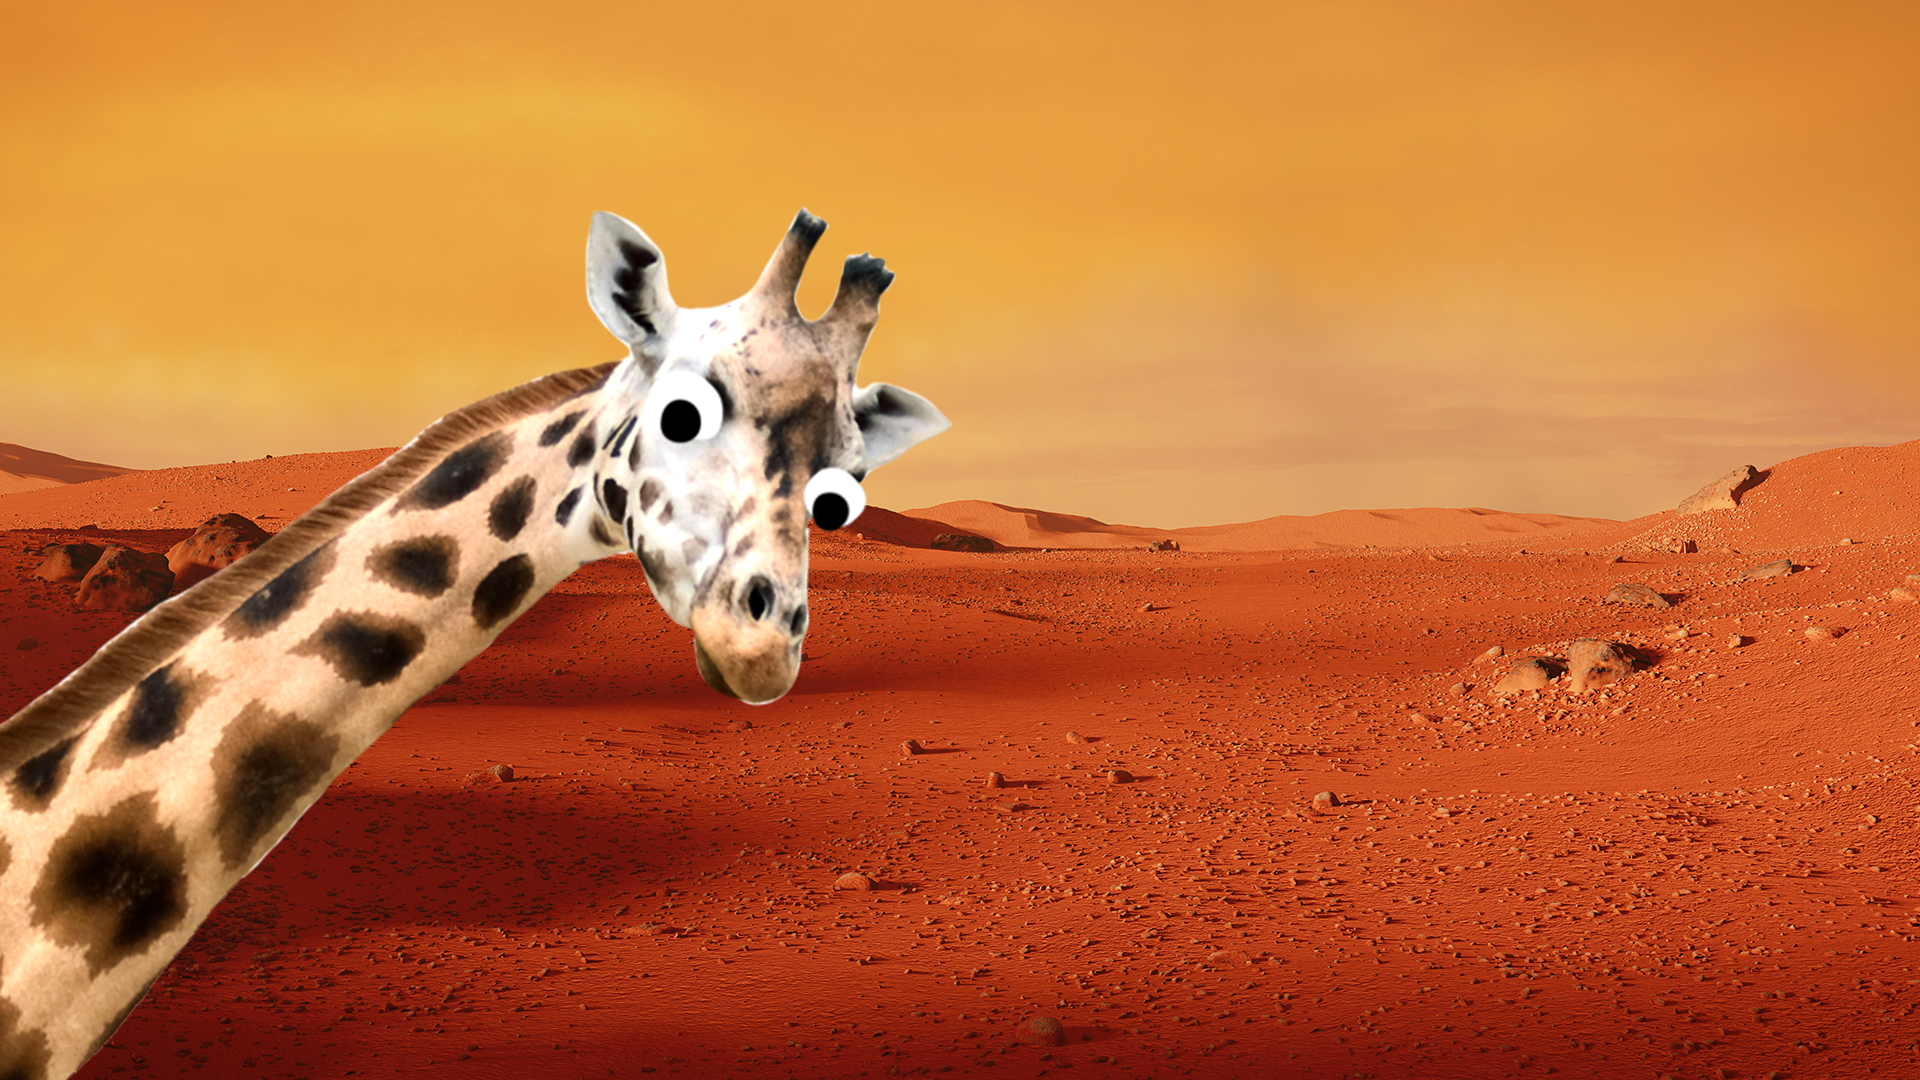 Giraffe on mars